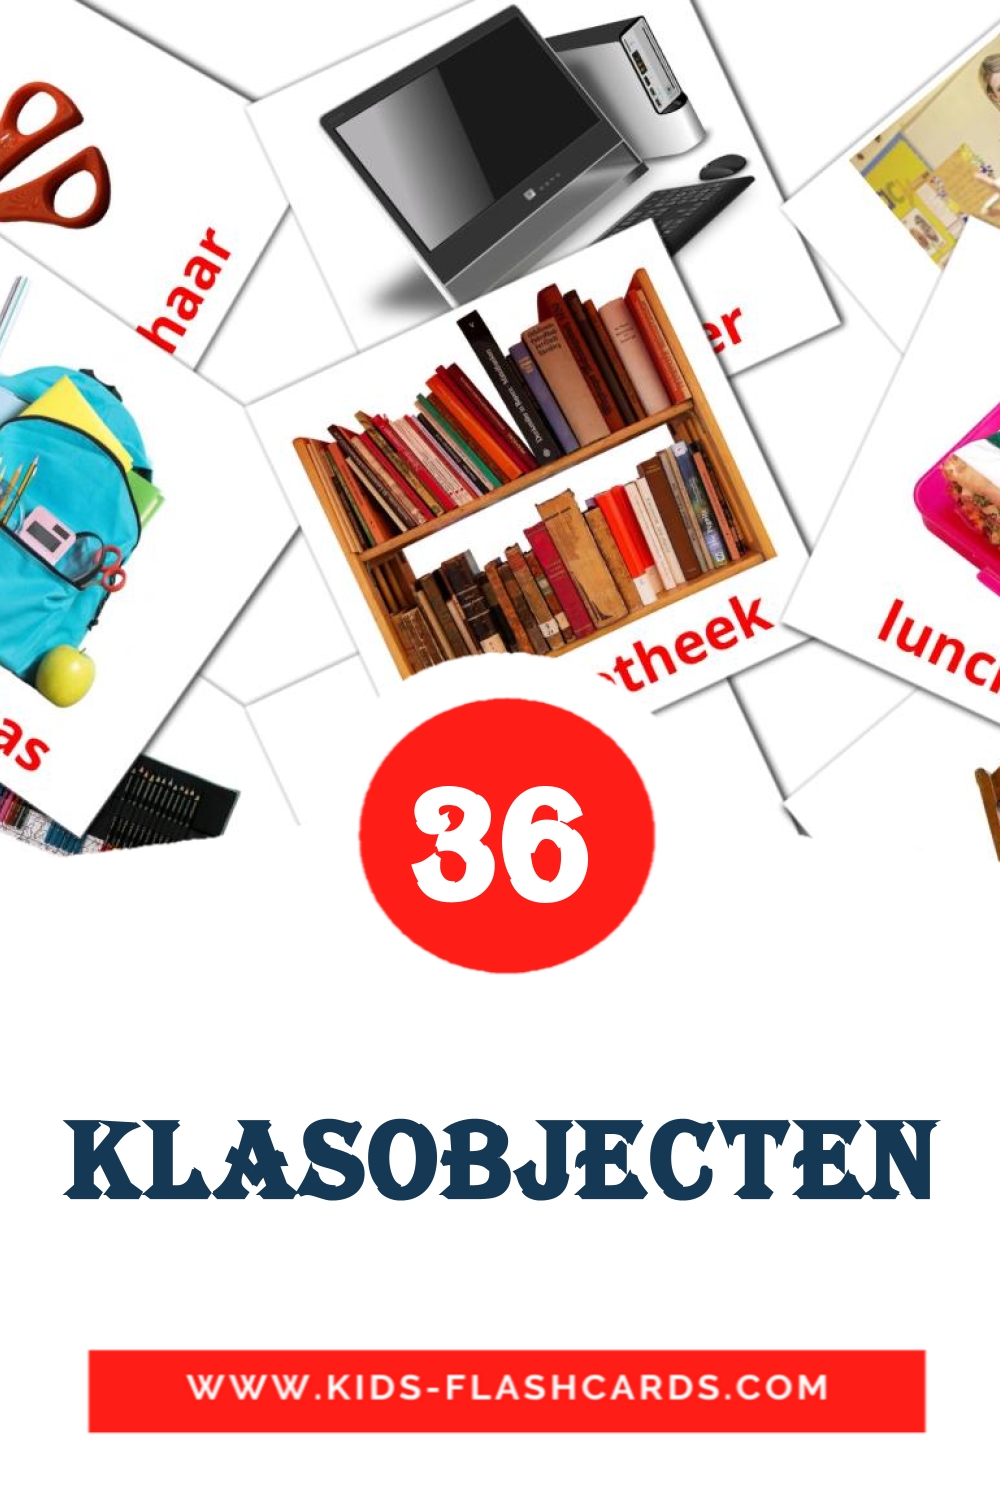 Klasobjecten на нидерландcком для Детского Сада (36 карточек)